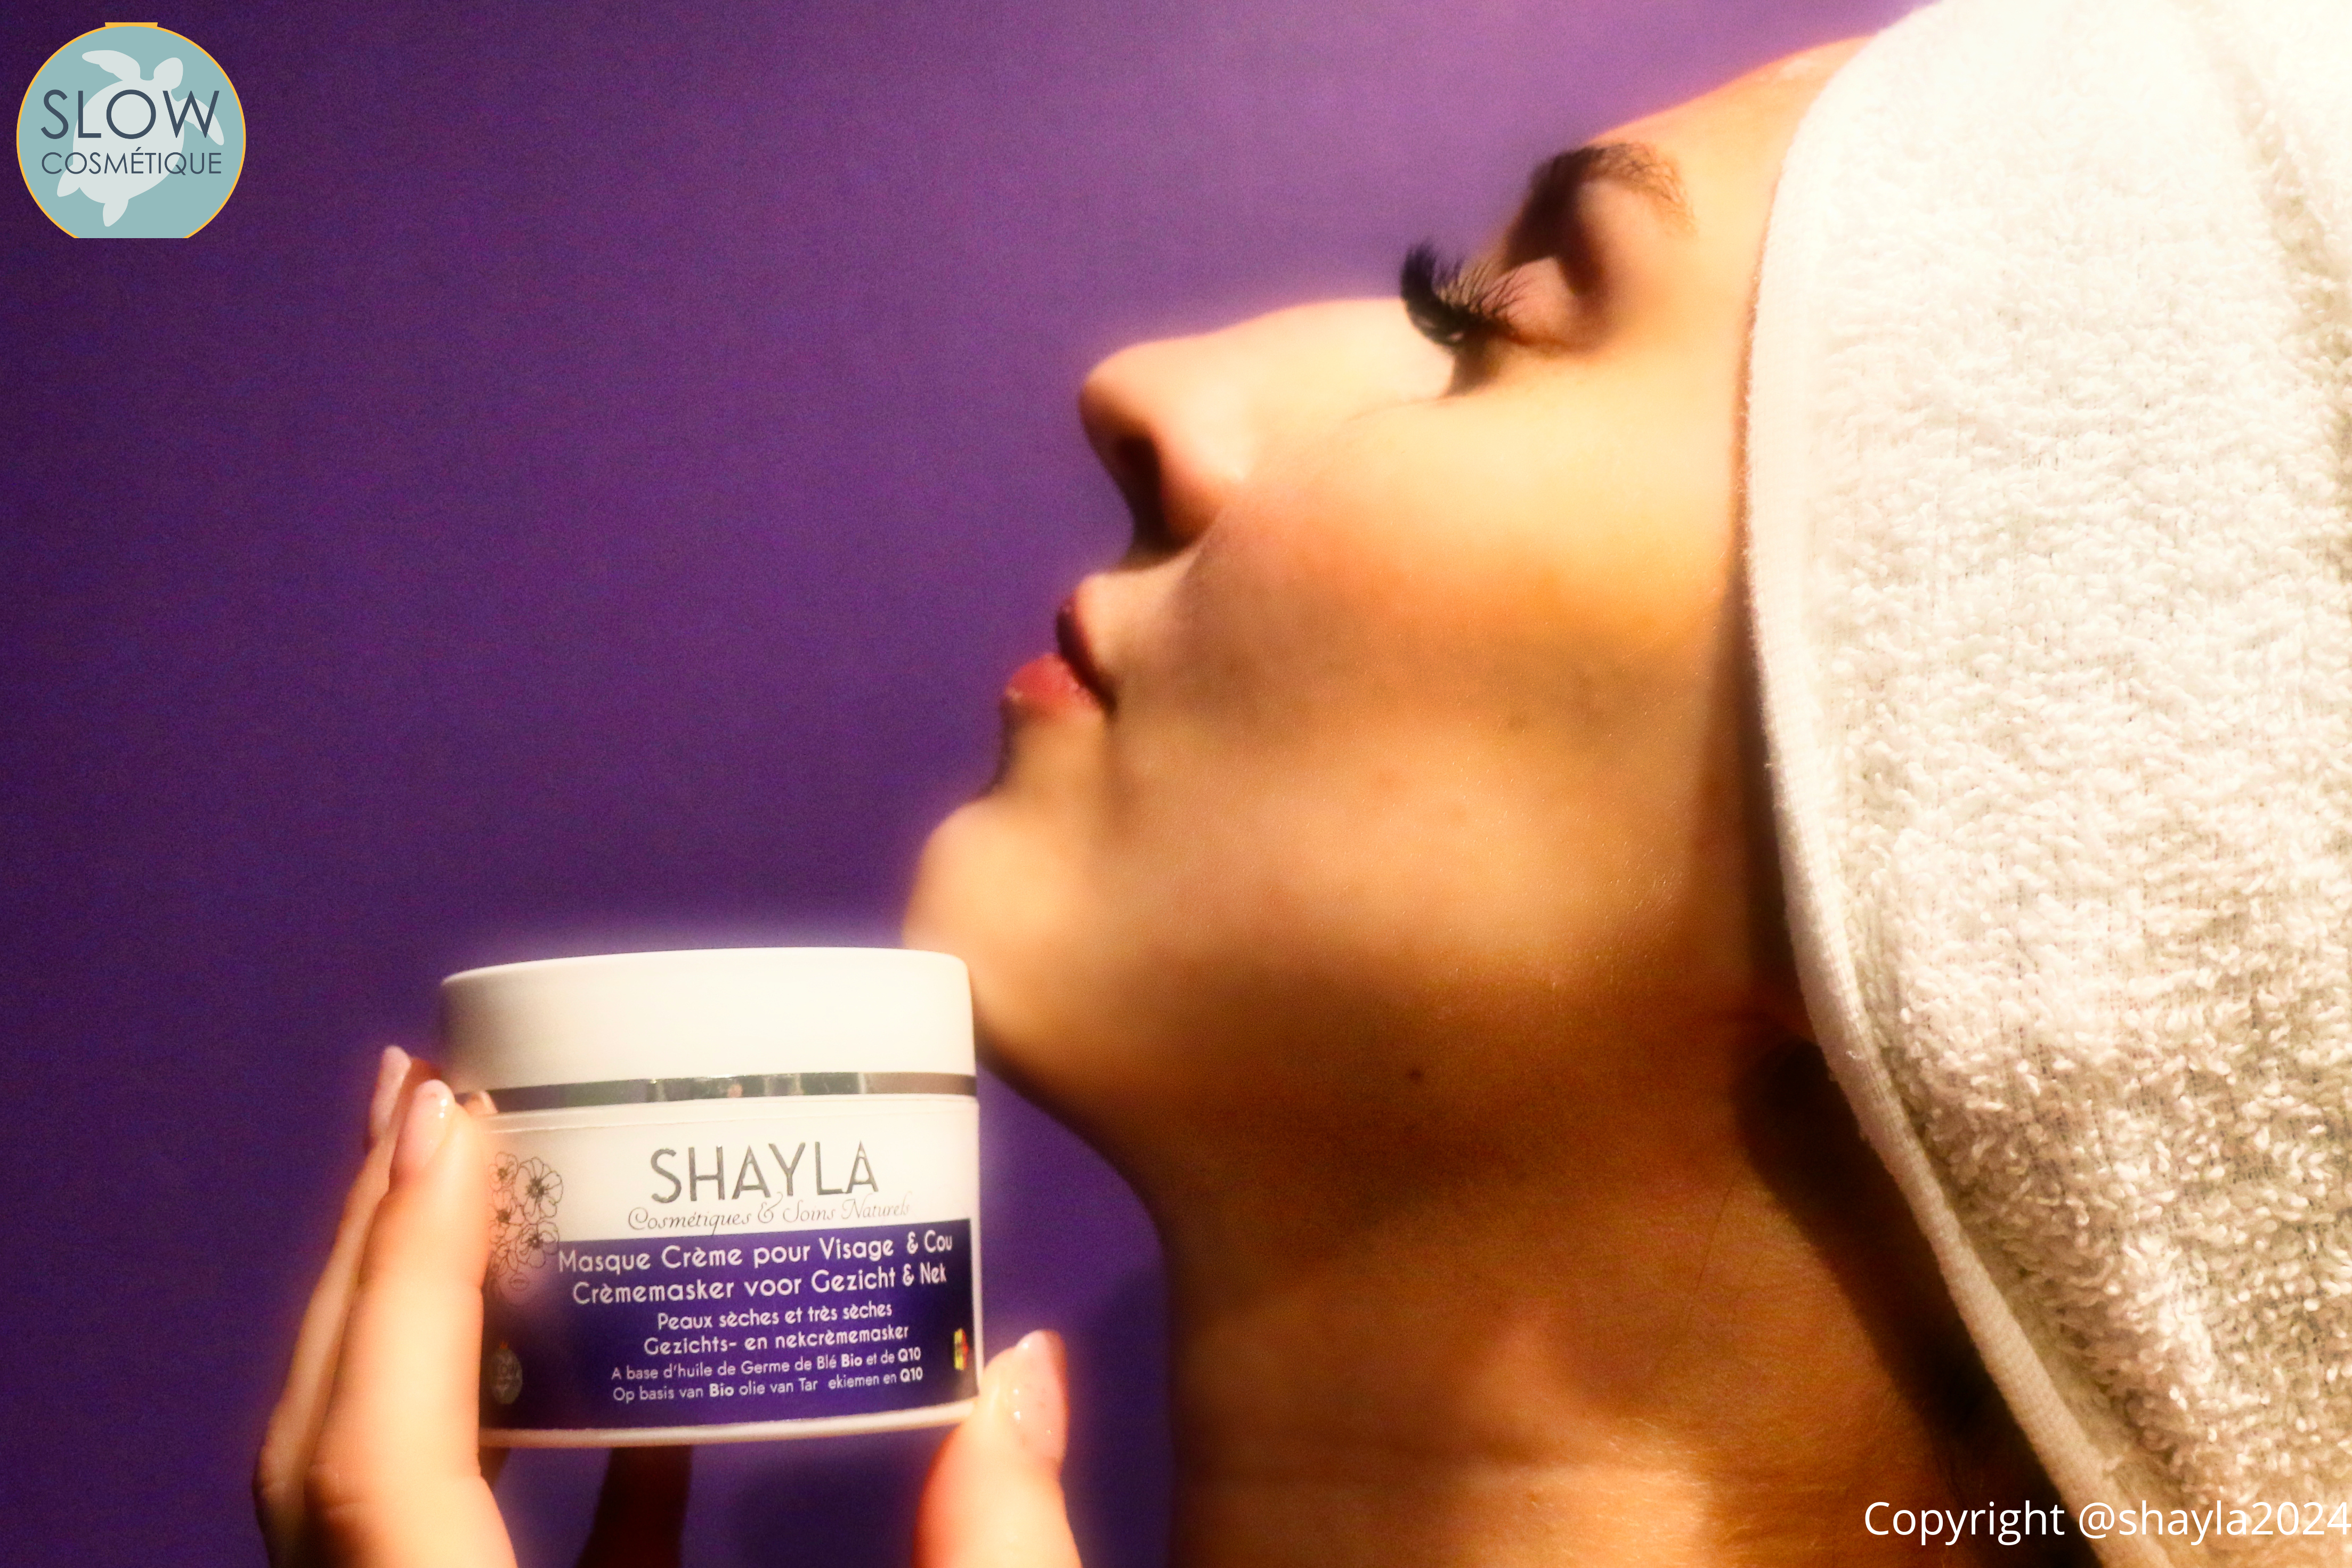 Shayla cosmetiques naturels - MASQUE visage peaux matures et seches - argile blanche et hydrolat de Ciste - huile de chanvre bio naturelles - belge (2).png